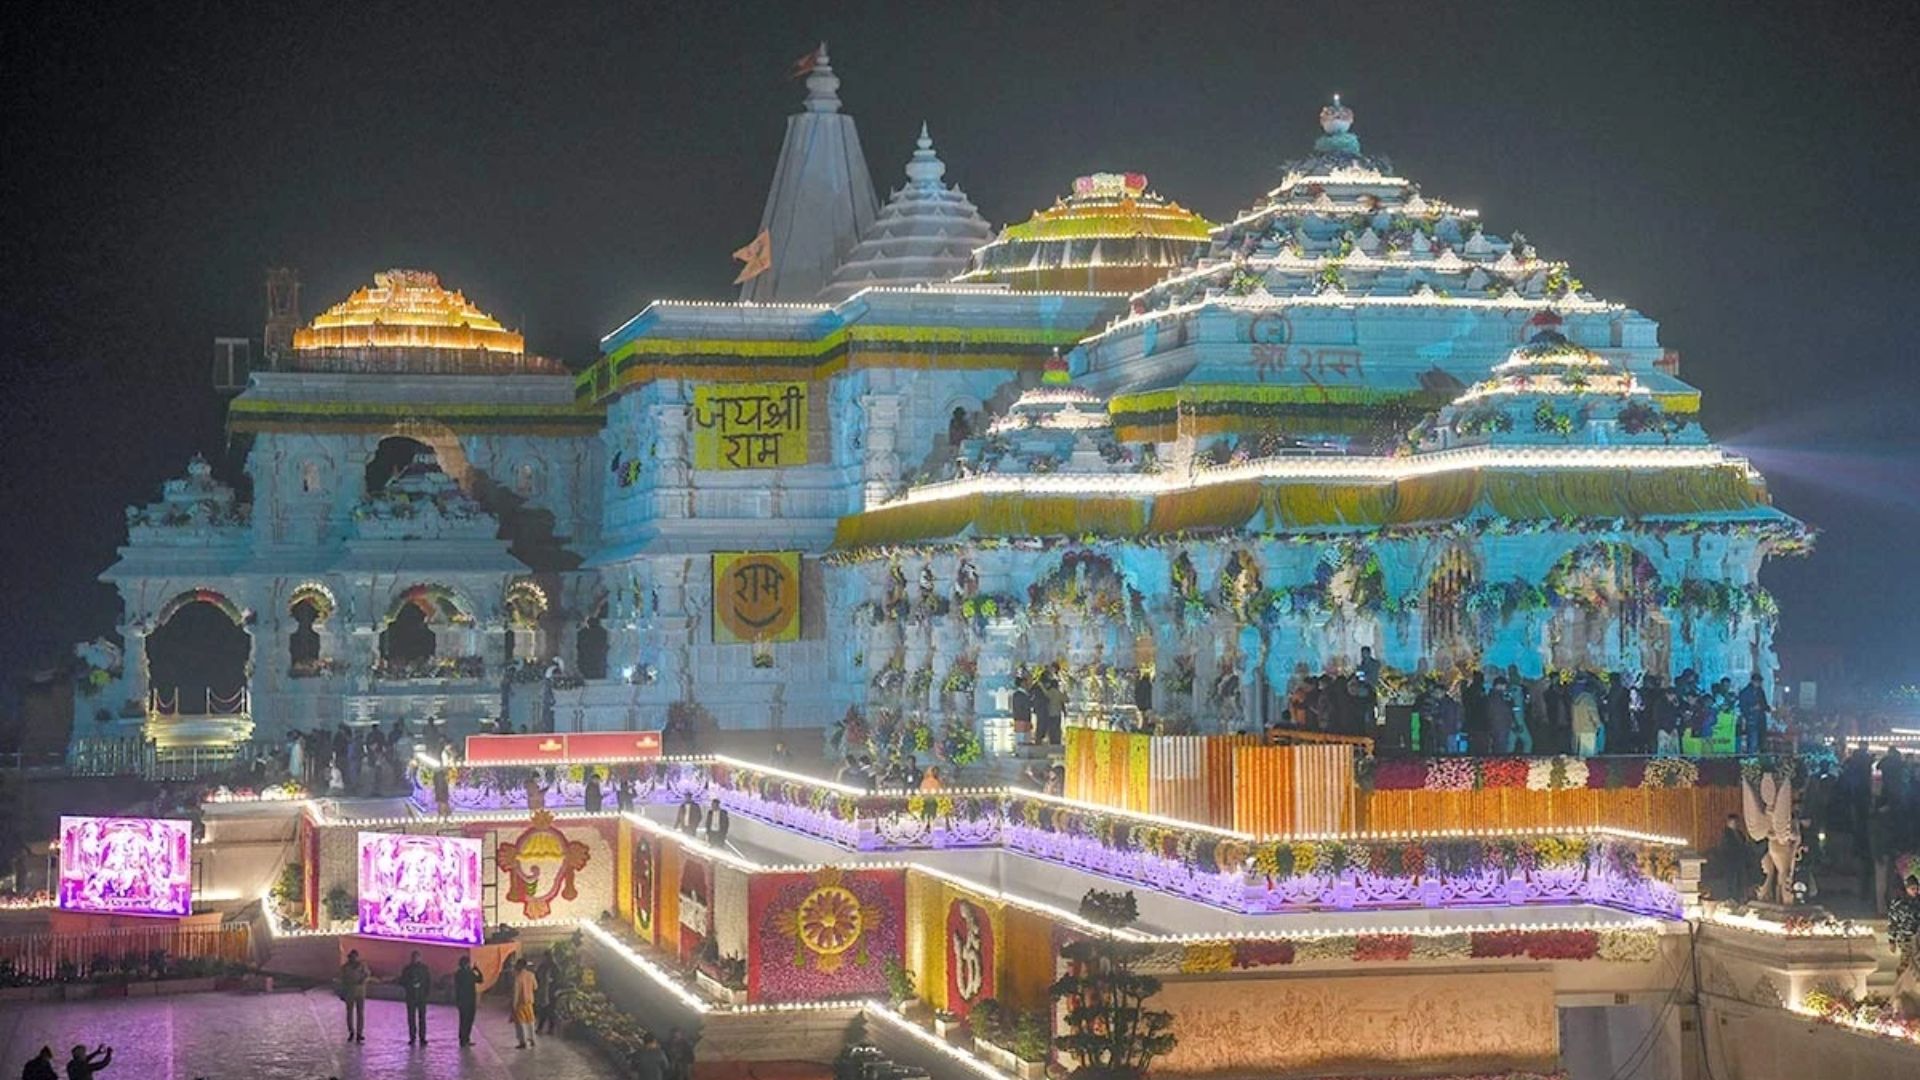 राम मंदिर की प्रतिकृति न्यूयॉर्क में ‘भारत दिवस’ पर होने वाली परेड का बनेगी हिस्सा 